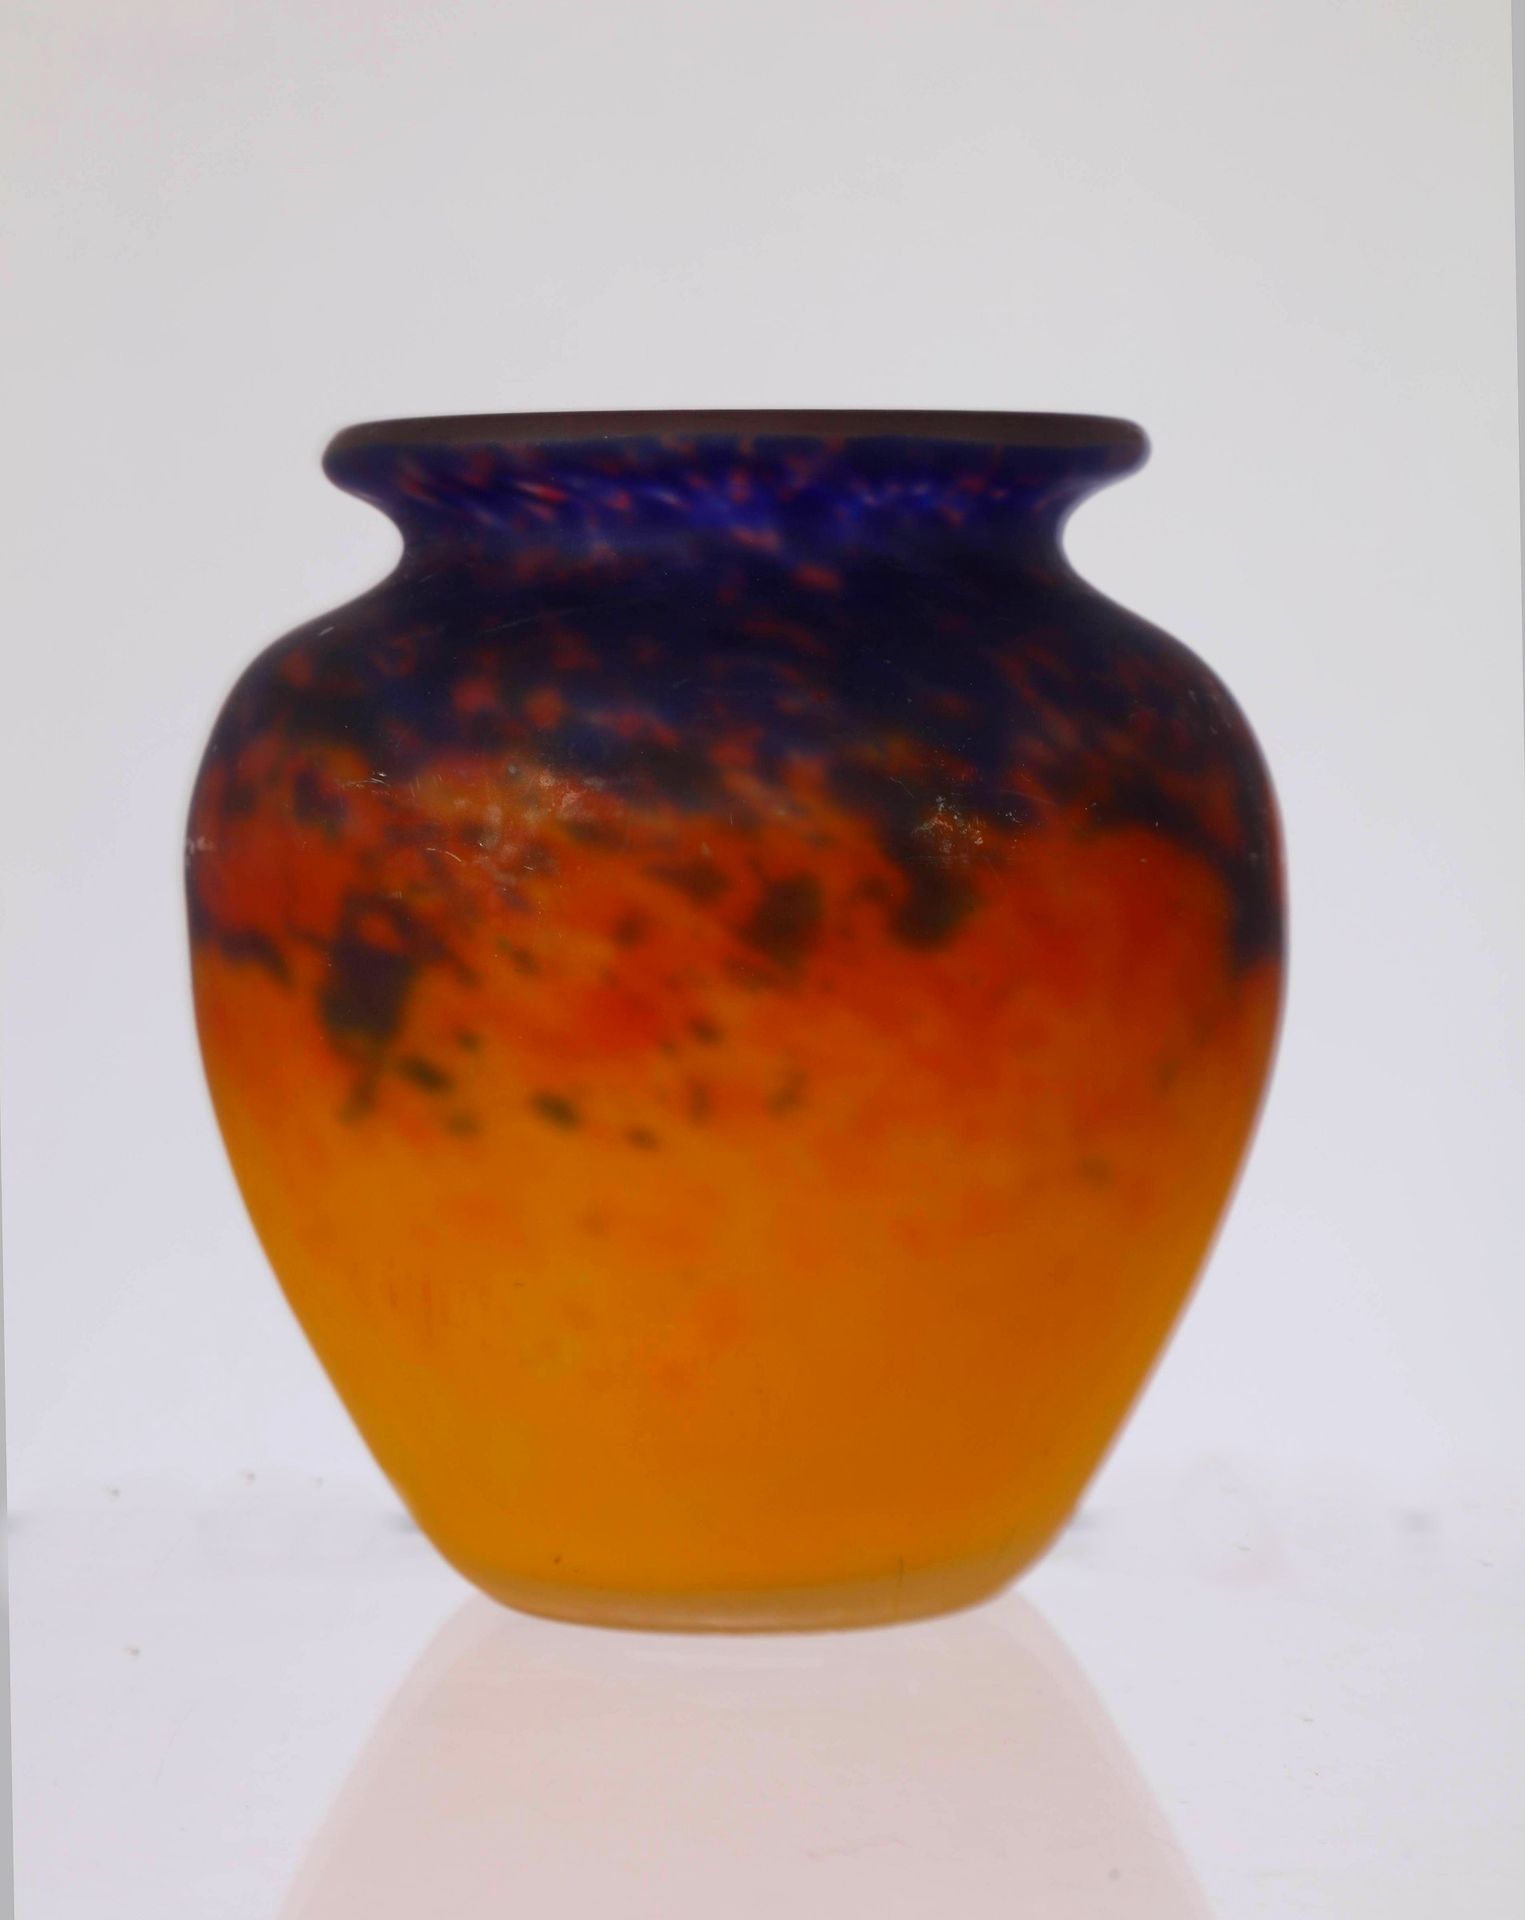 Null MULLER Frère，Luneville，橙紫色的硫磺玻璃花瓶，署名 "MULLER frères"。11厘米